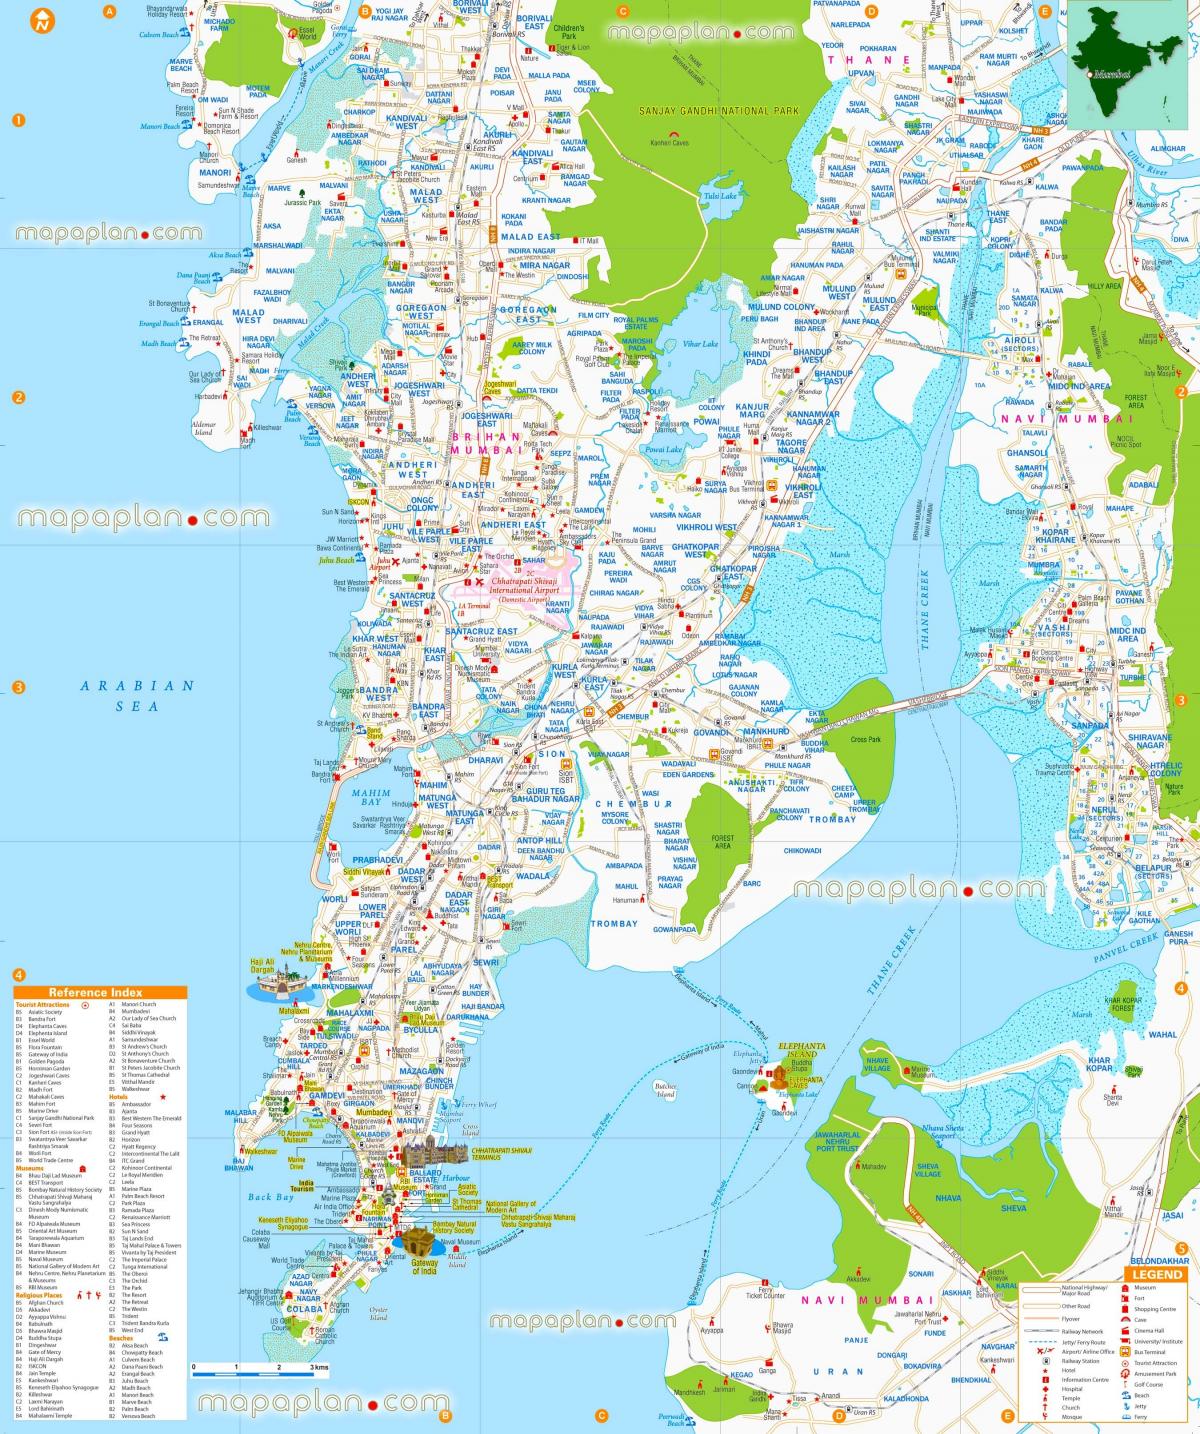 Mumbai - Bombay sightseeing kaart